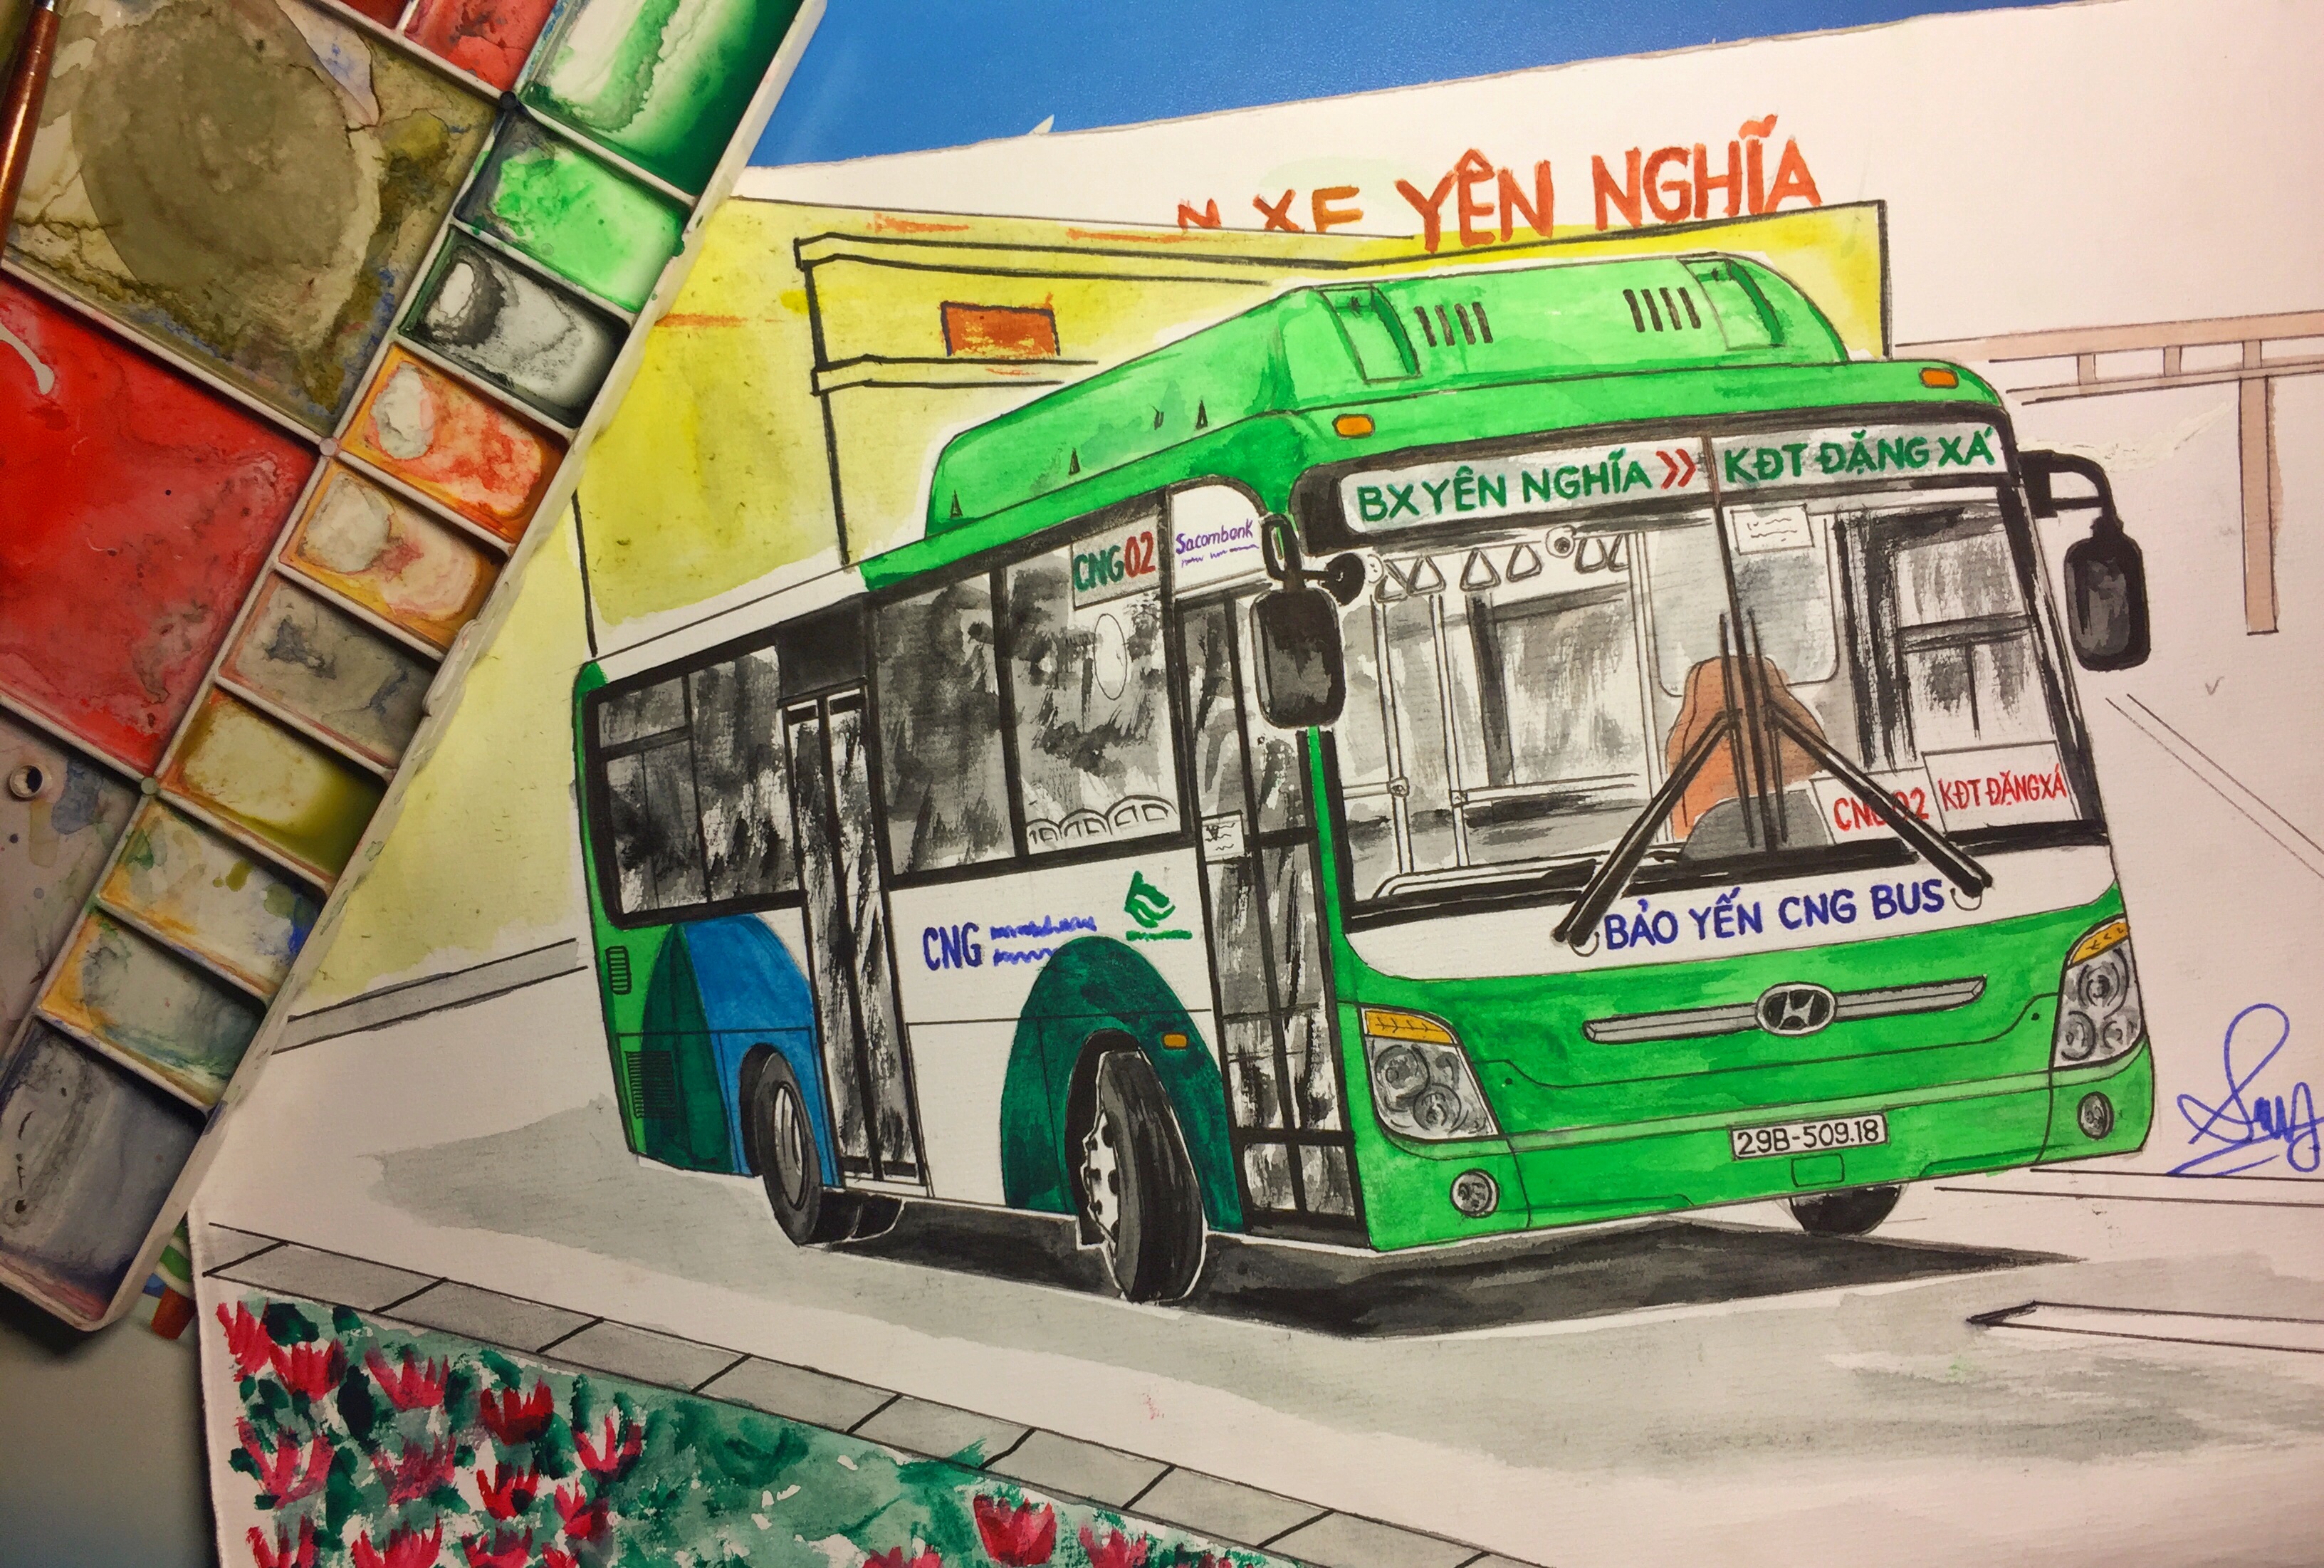 Hãy chiêm ngưỡng bức tranh vẽ xe buýt Hà Nội đầy màu sắc, tinh tế và sống động. Bức tranh sẽ đem đến cho bạn cảm giác như đang lướt qua những con đường của Thủ đô và trải nghiệm chuyến đi trên xe buýt đầy ấn tượng.